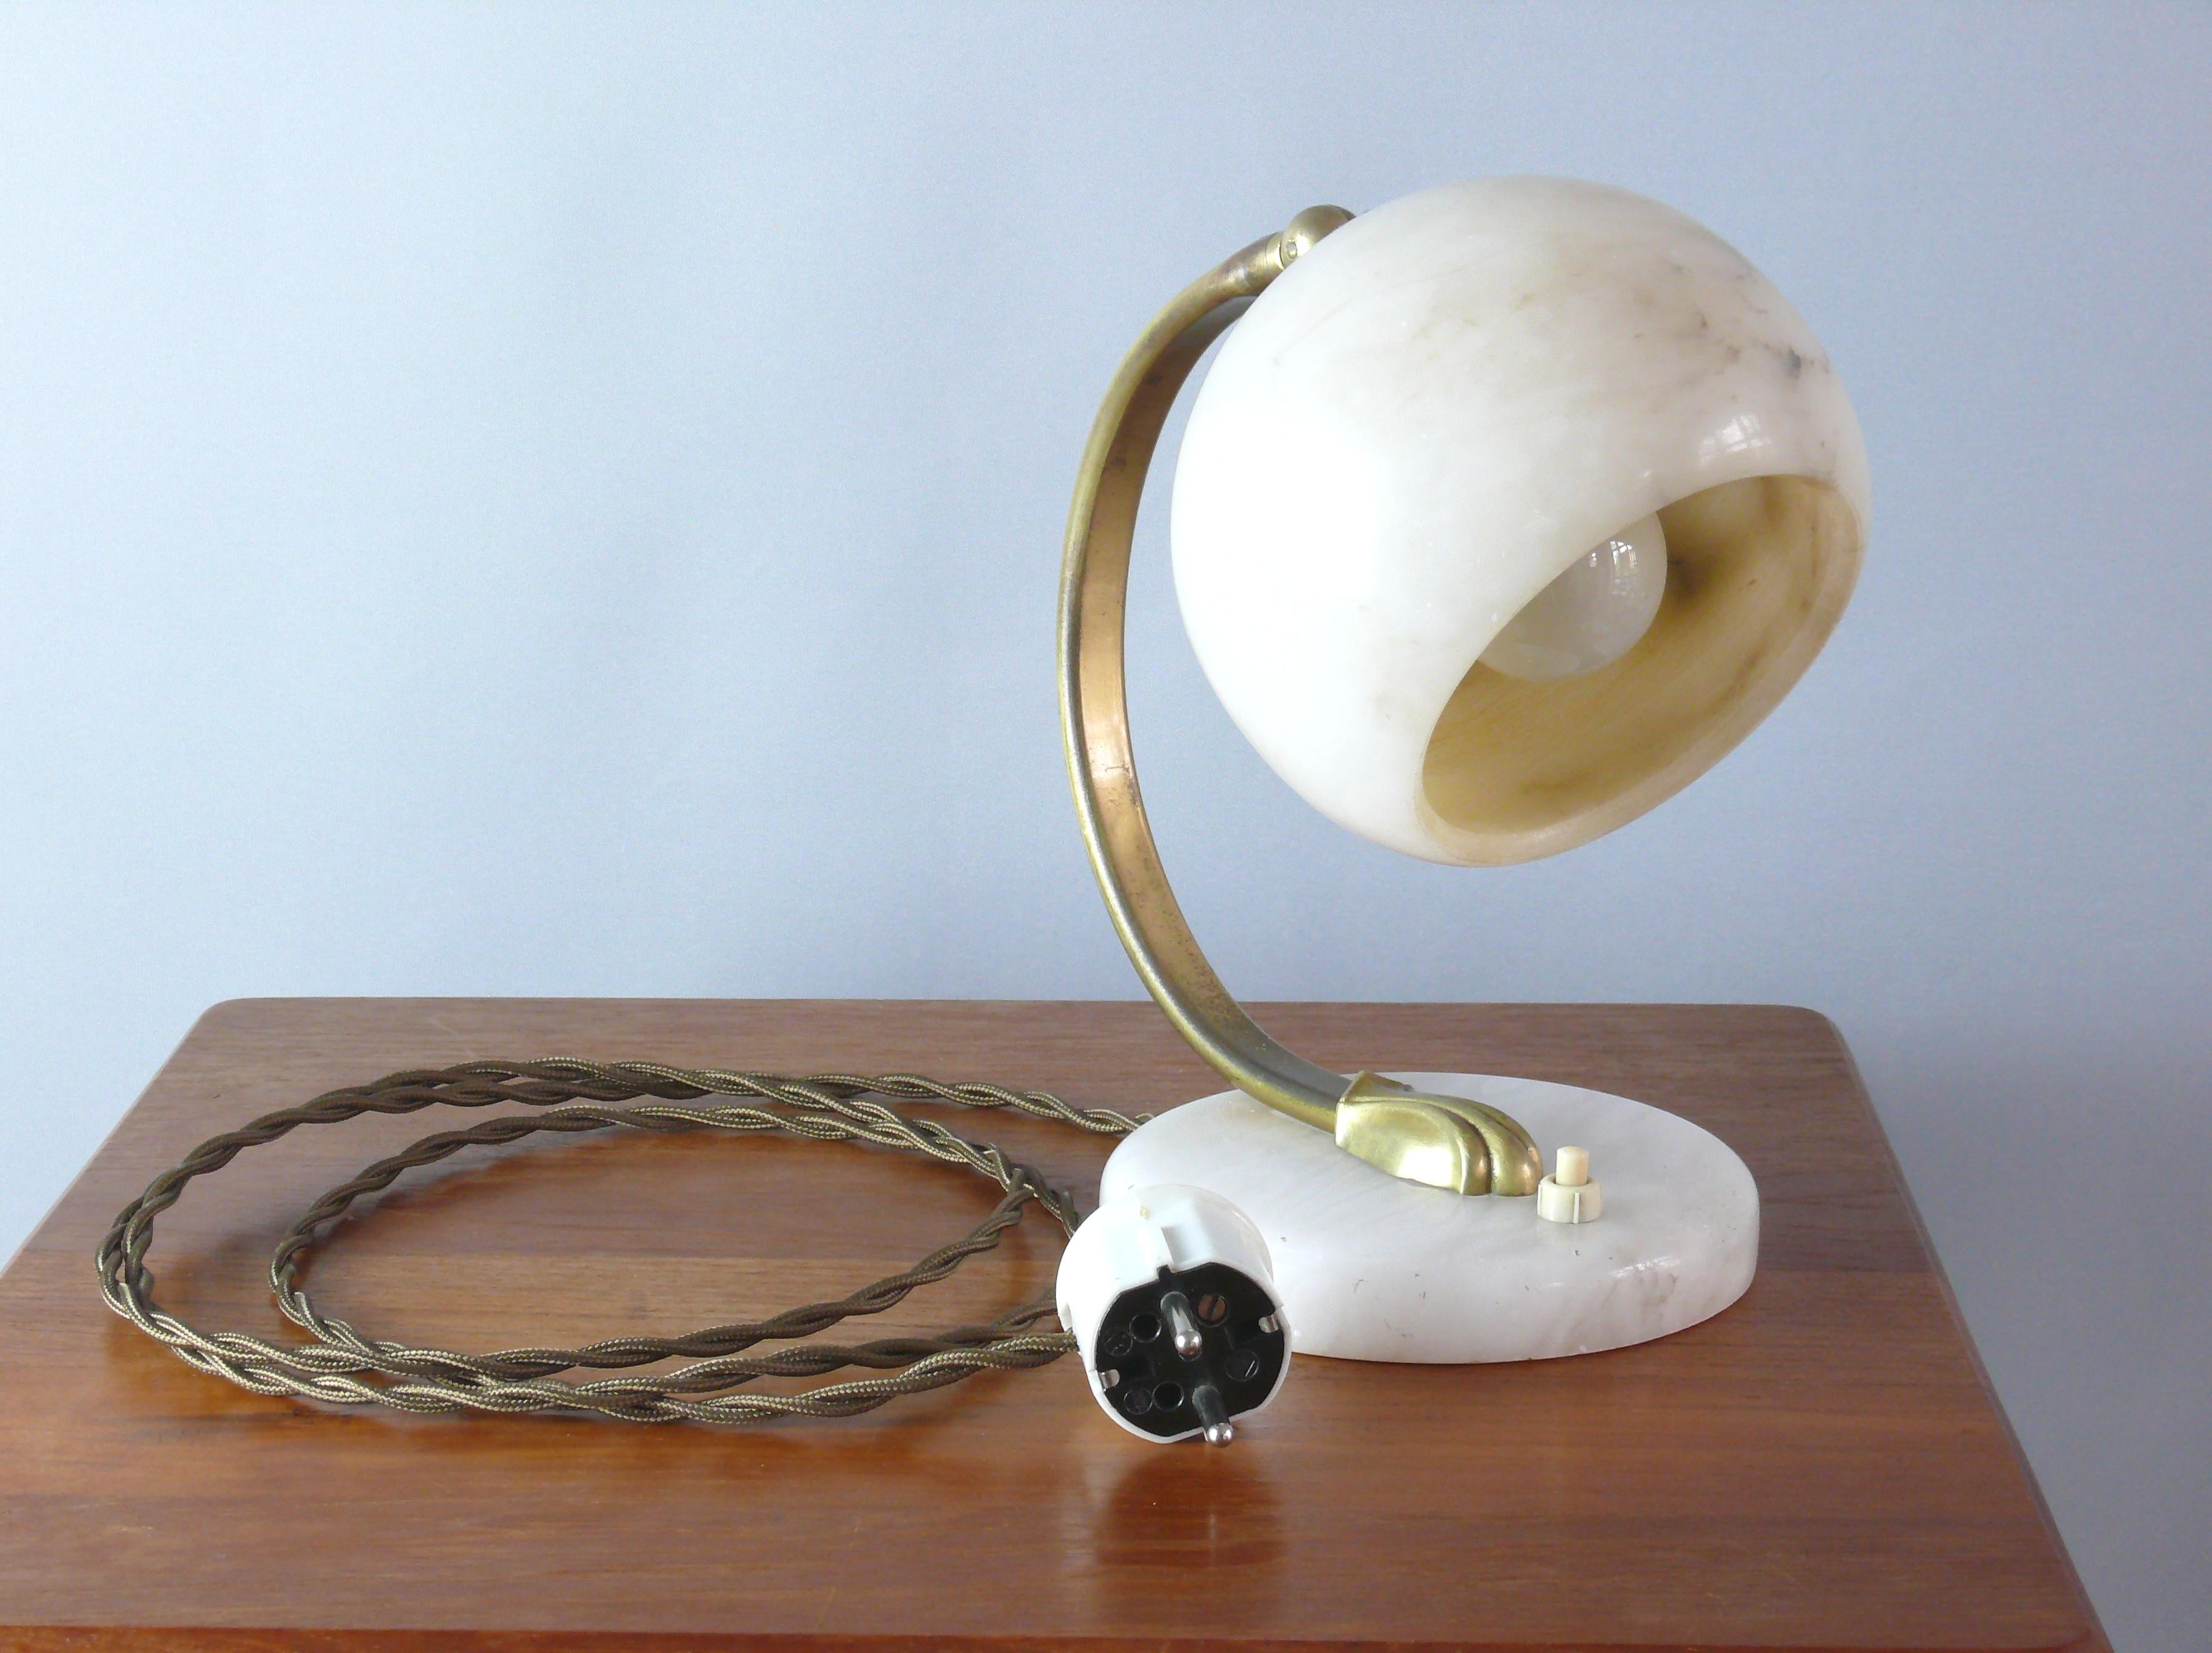 Lampe de table Art déco en marbre et laiton des années 1930 en bon état, un beau témoignage de l'époque Art déco. La lampe est équipée d'une douille en plastique E 27 et la hauteur de l'abat-jour peut être réglée à l'aide d'une vis à oreilles. Le